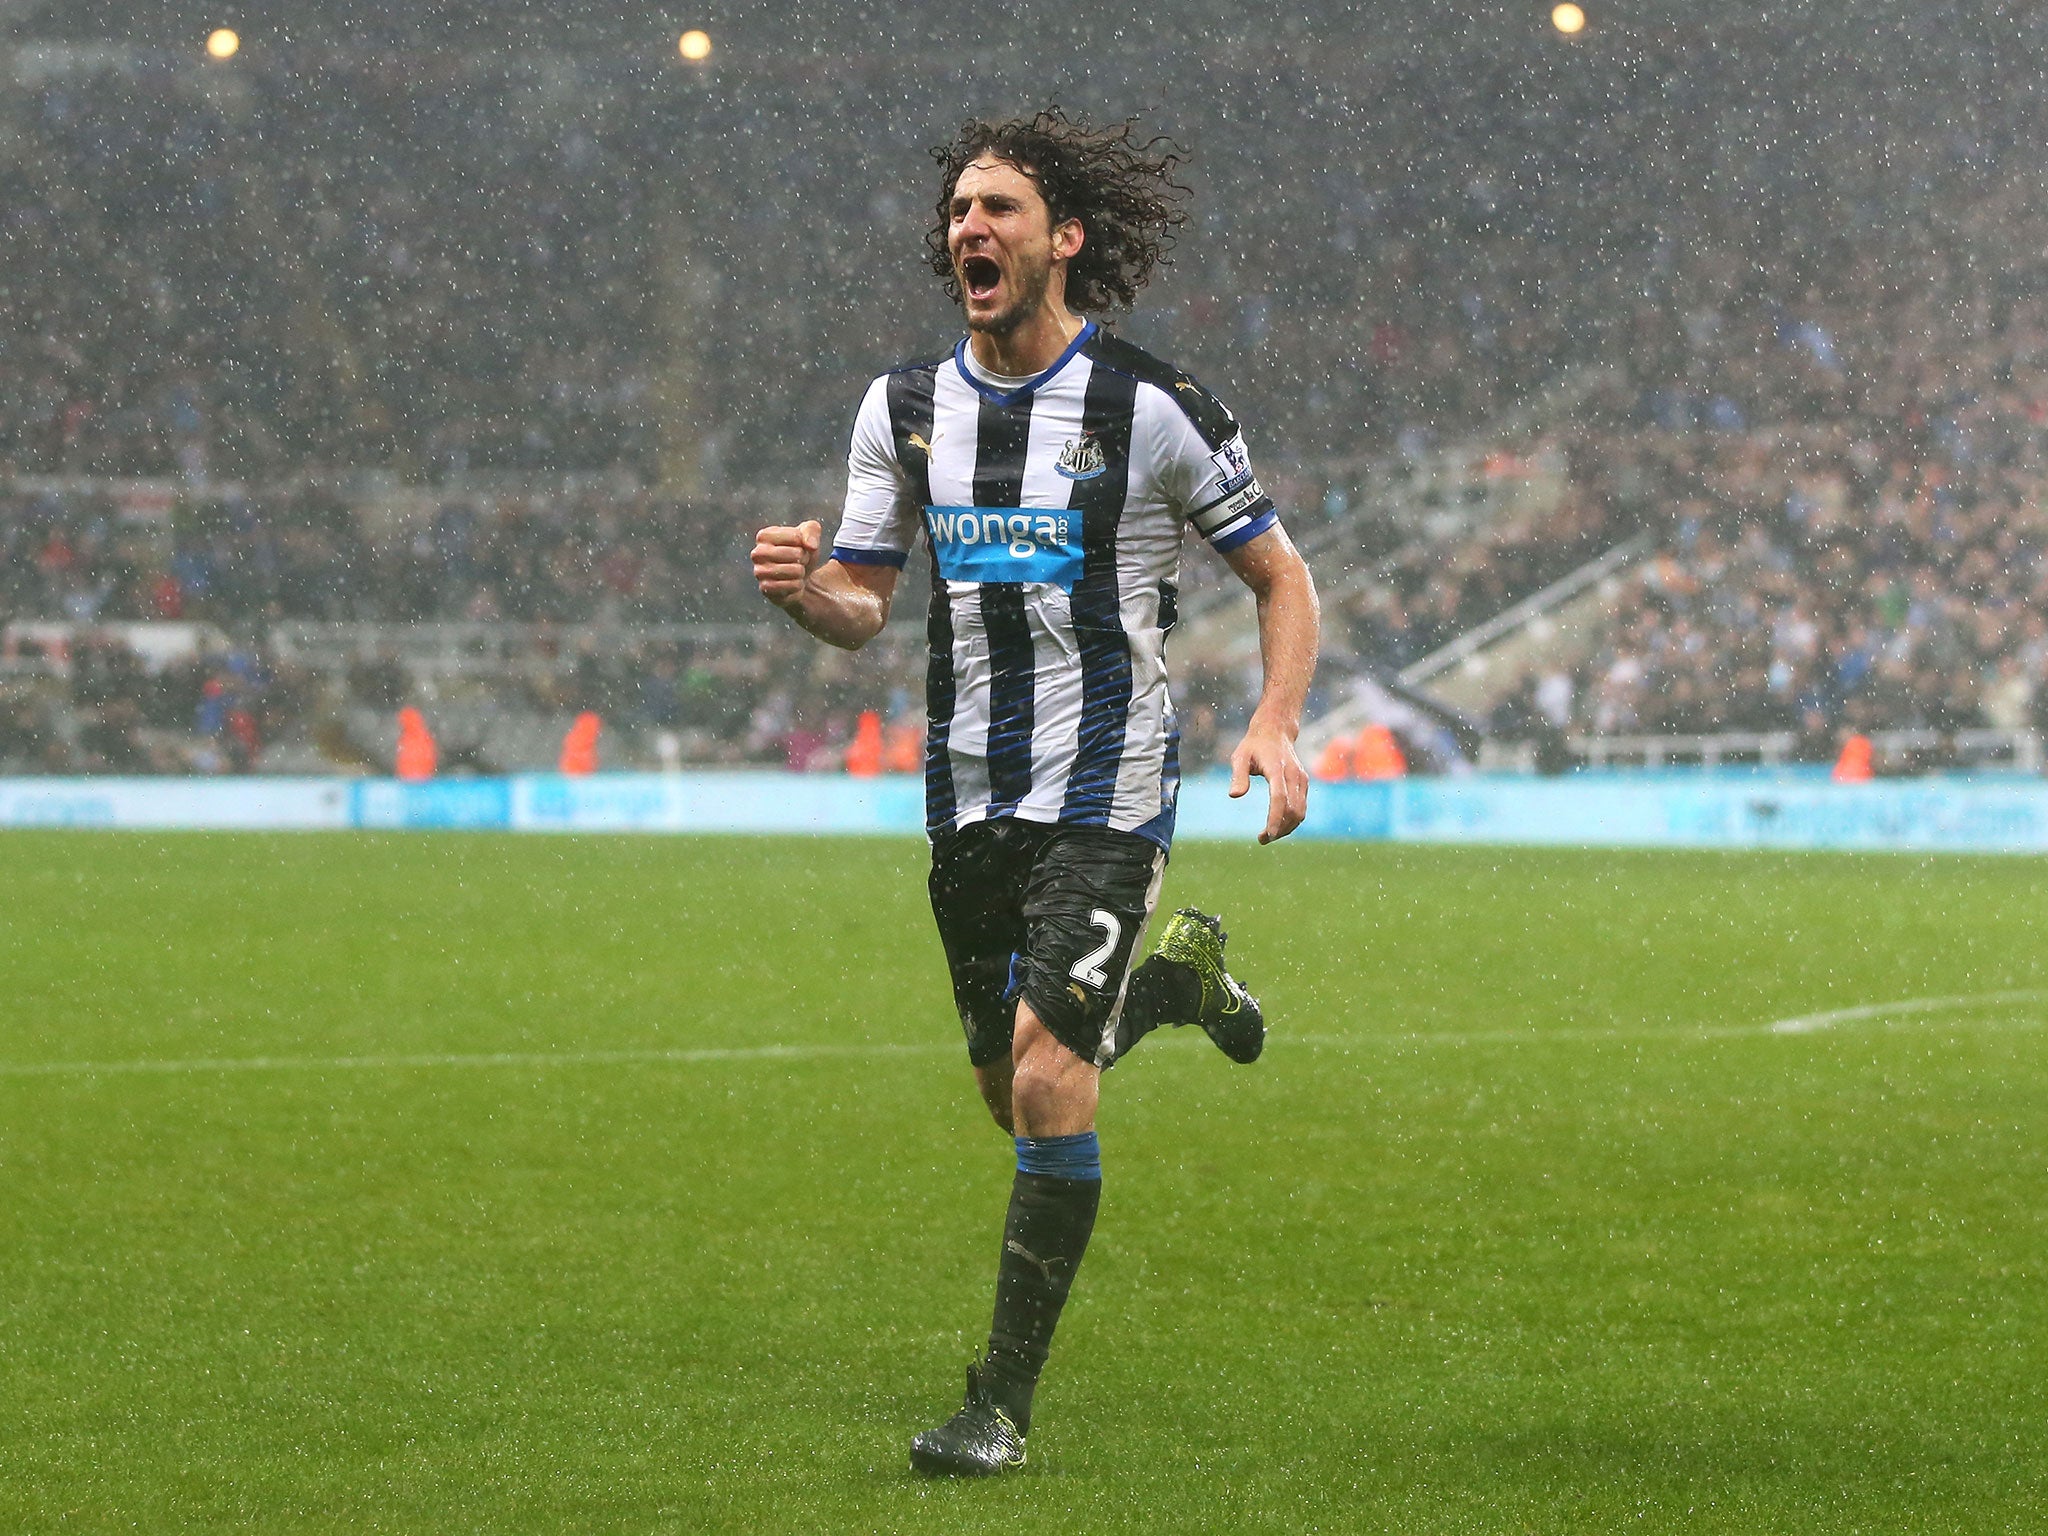 Fabricio Coloccini celebrates scoring for Newcastle against Aston Villa